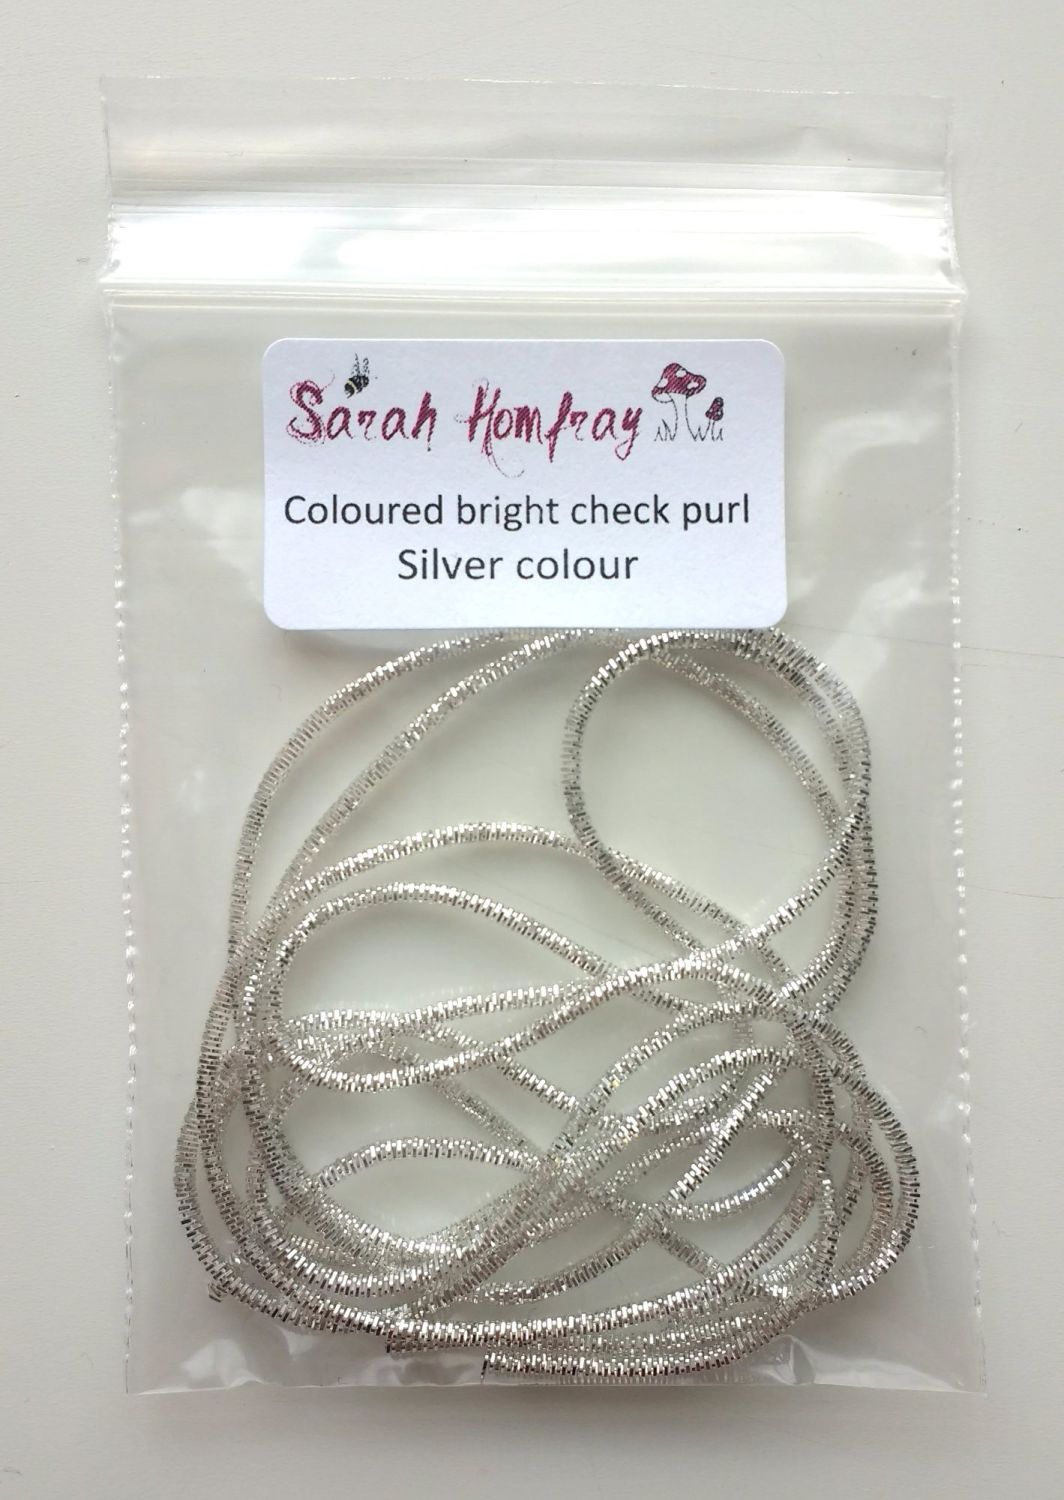 NEW! Coloured bright check purl no.6 - Silver colour